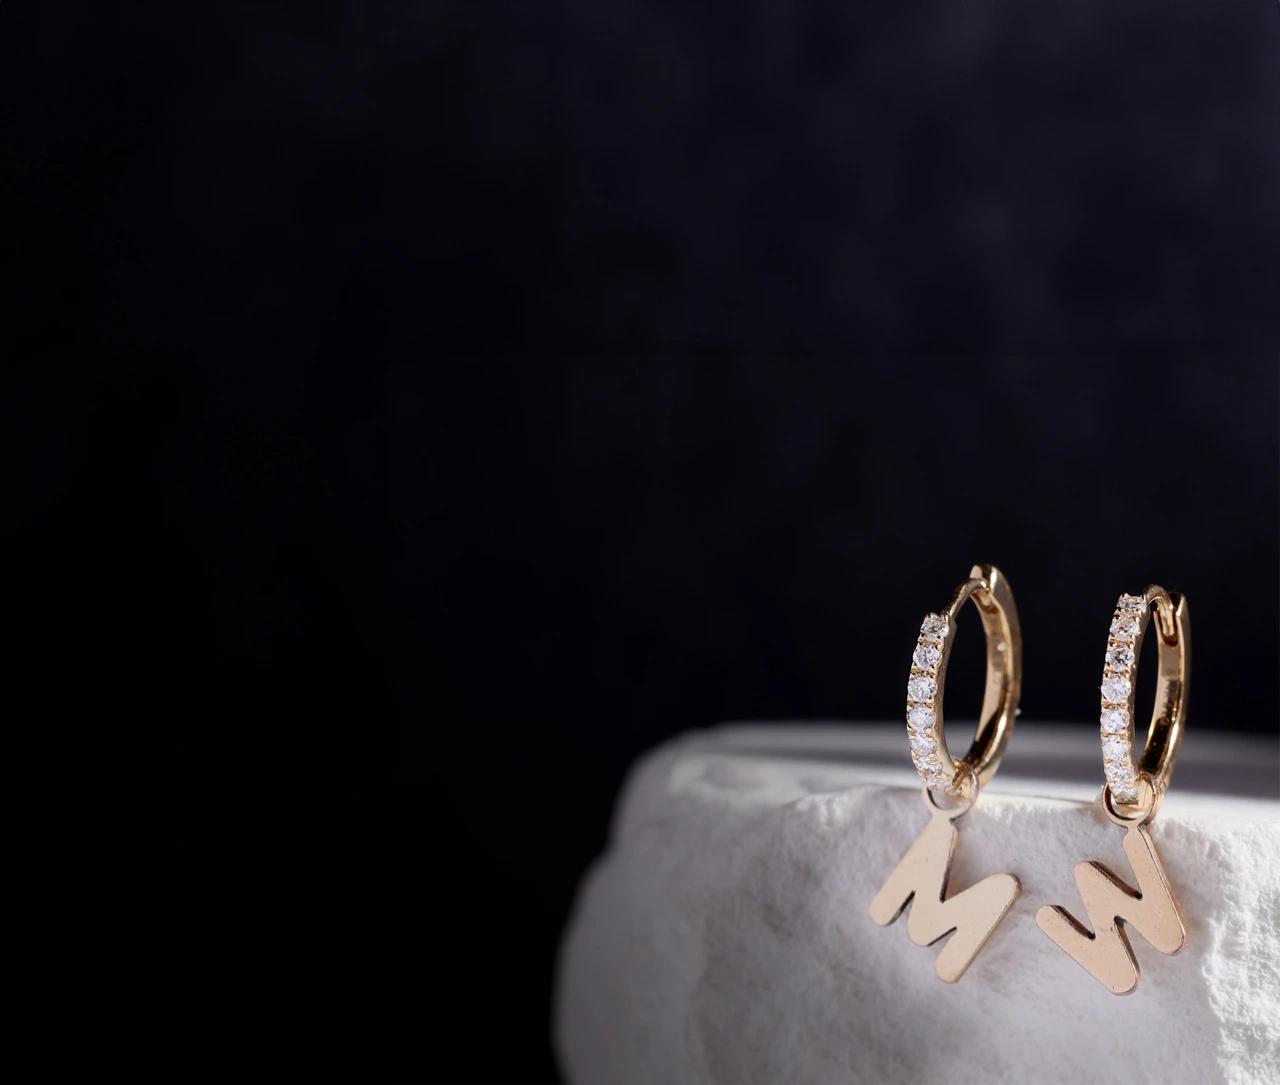 Michelle Wie West Jewelry Collaboration earrings